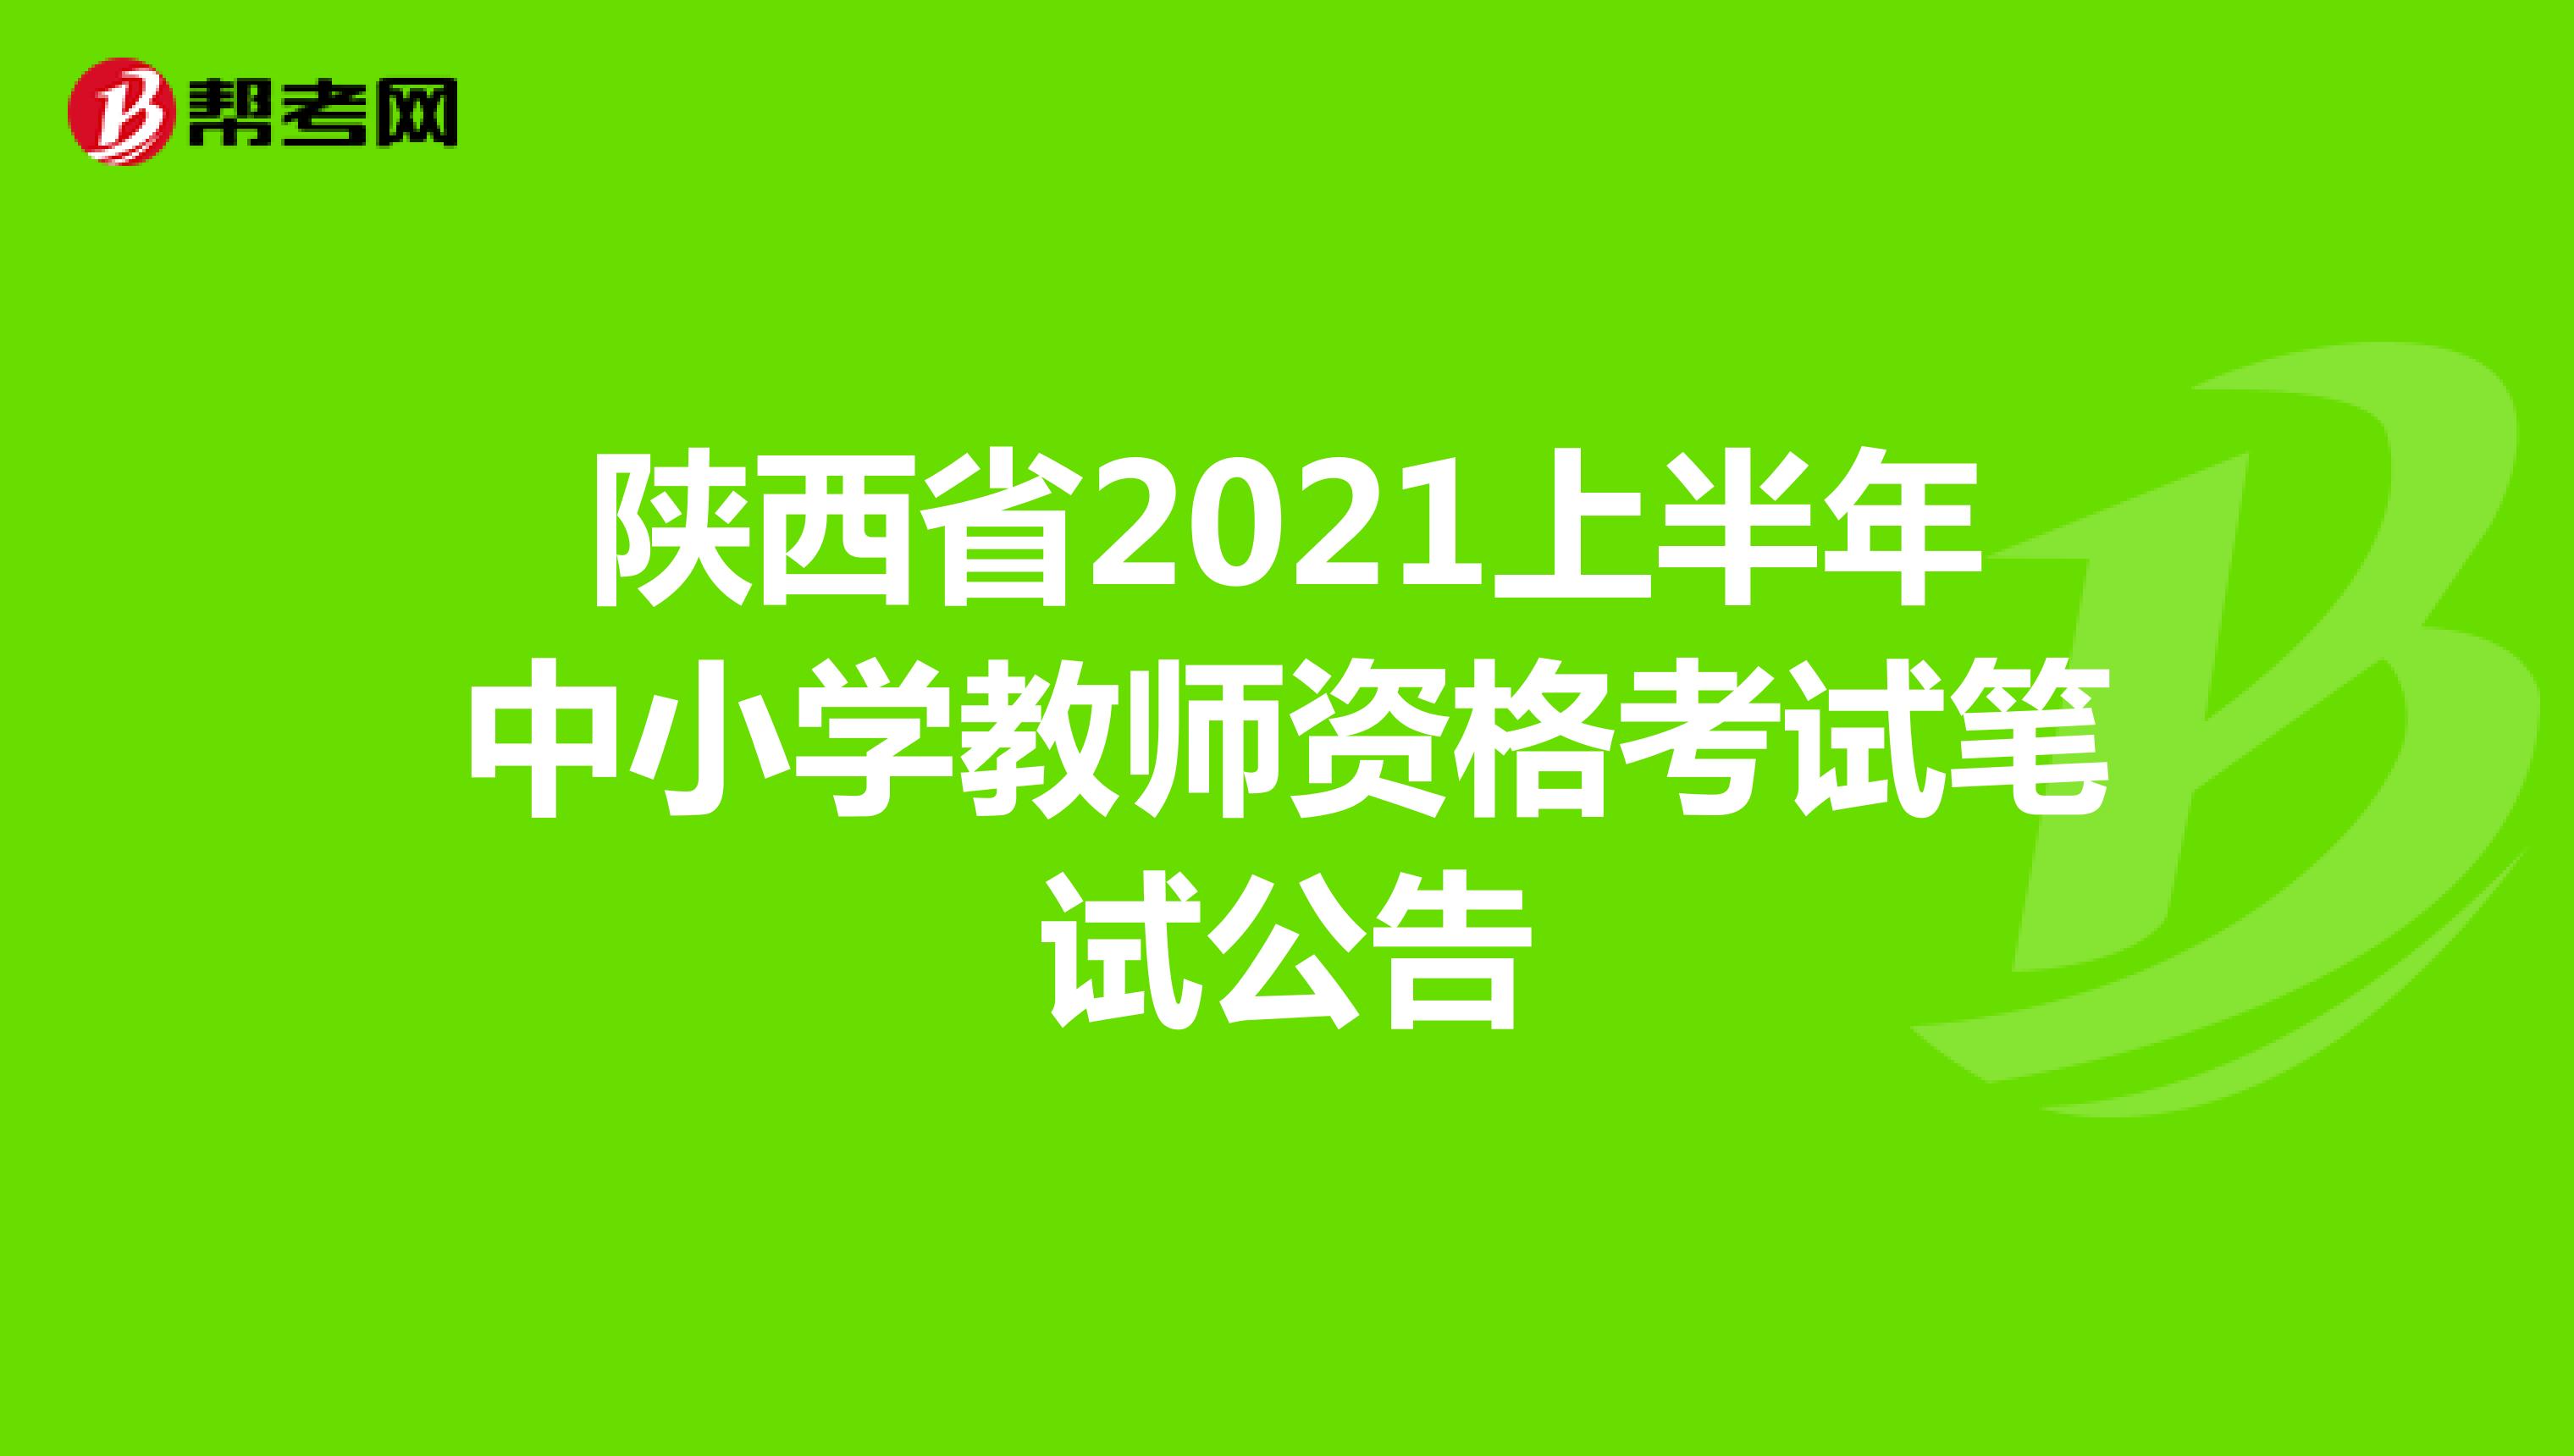 陕西省2021上半年中小学教师资格考试笔试公告